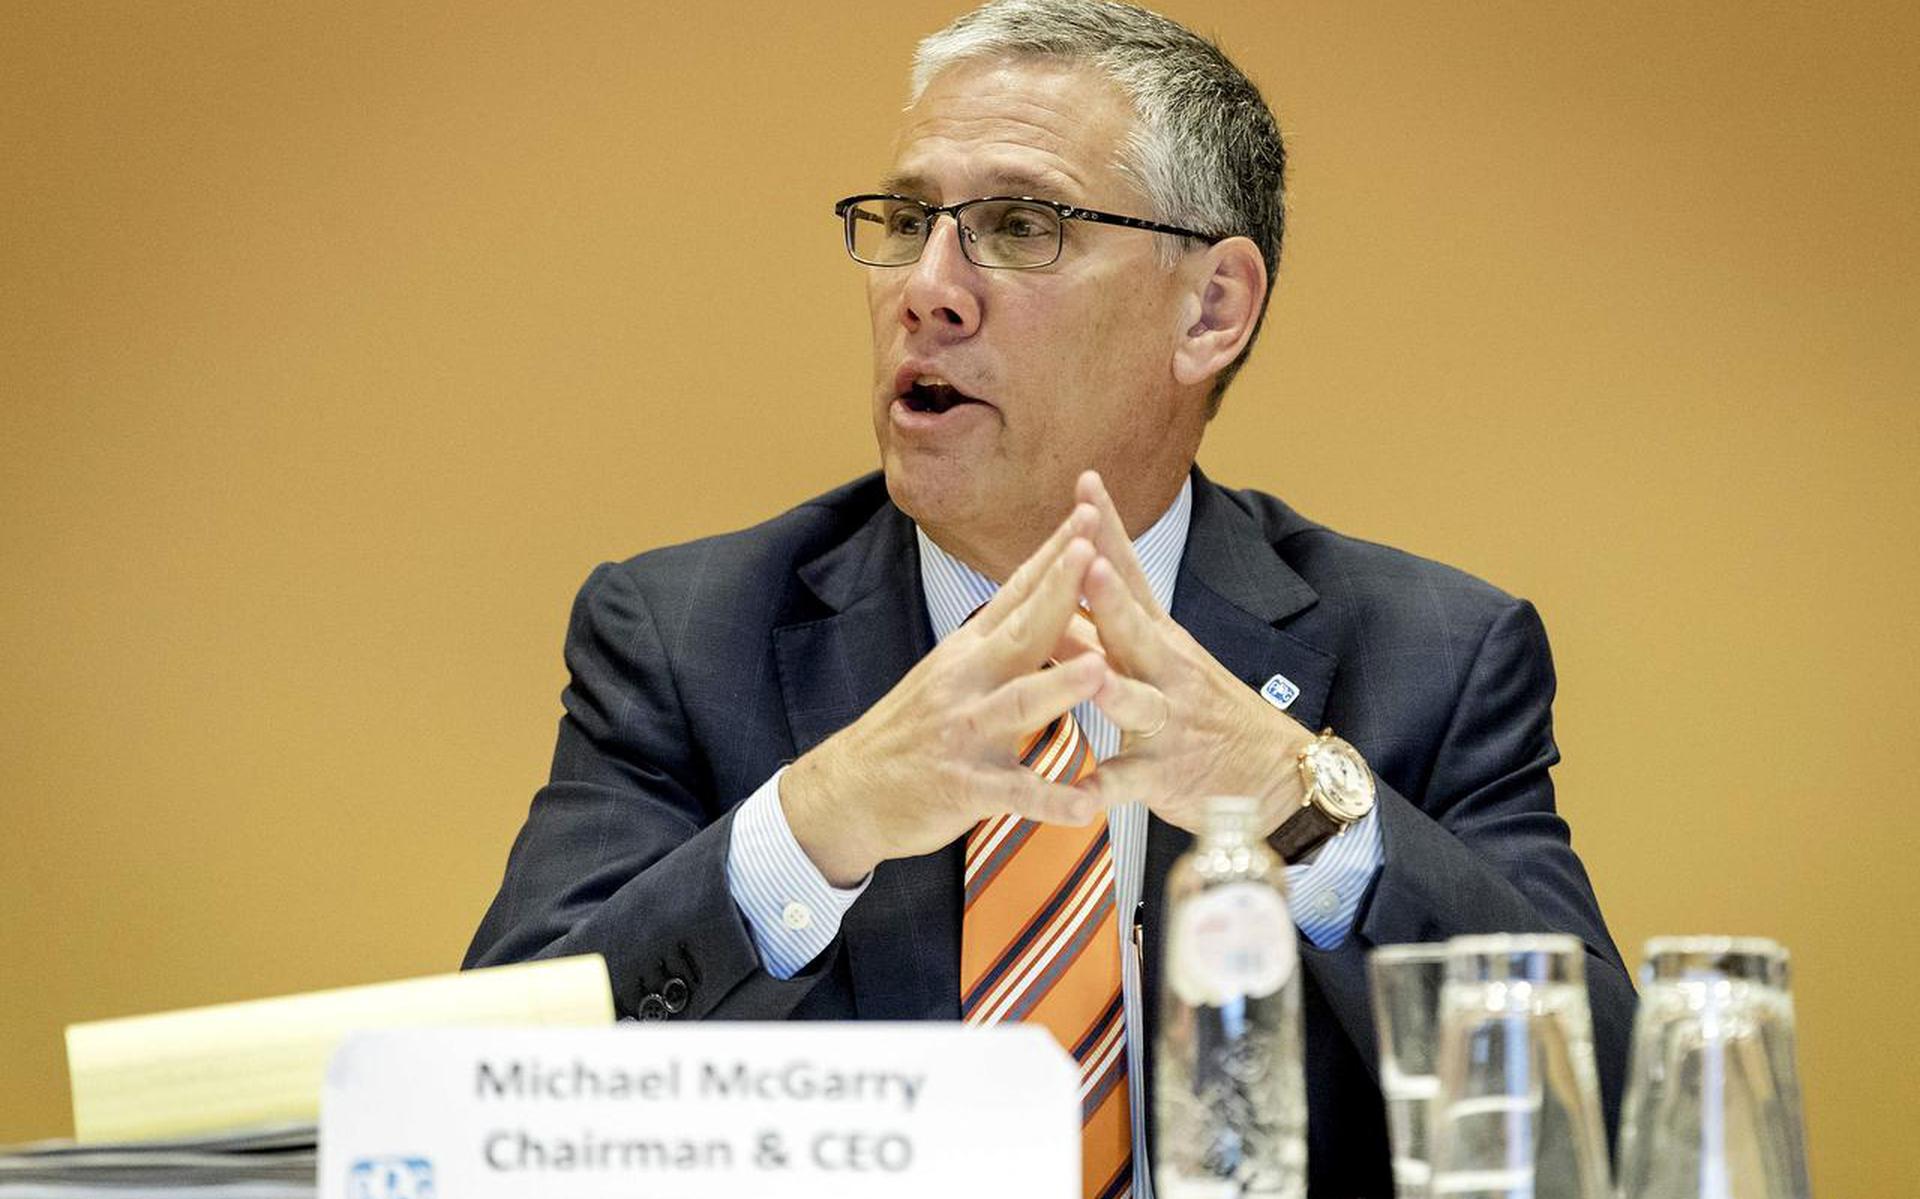 Michael McGarry,de hoogste baas van PPG Industries, licht toe waarom zijn bedrijf AkzoNobel wil overnemen. FOTO EPA